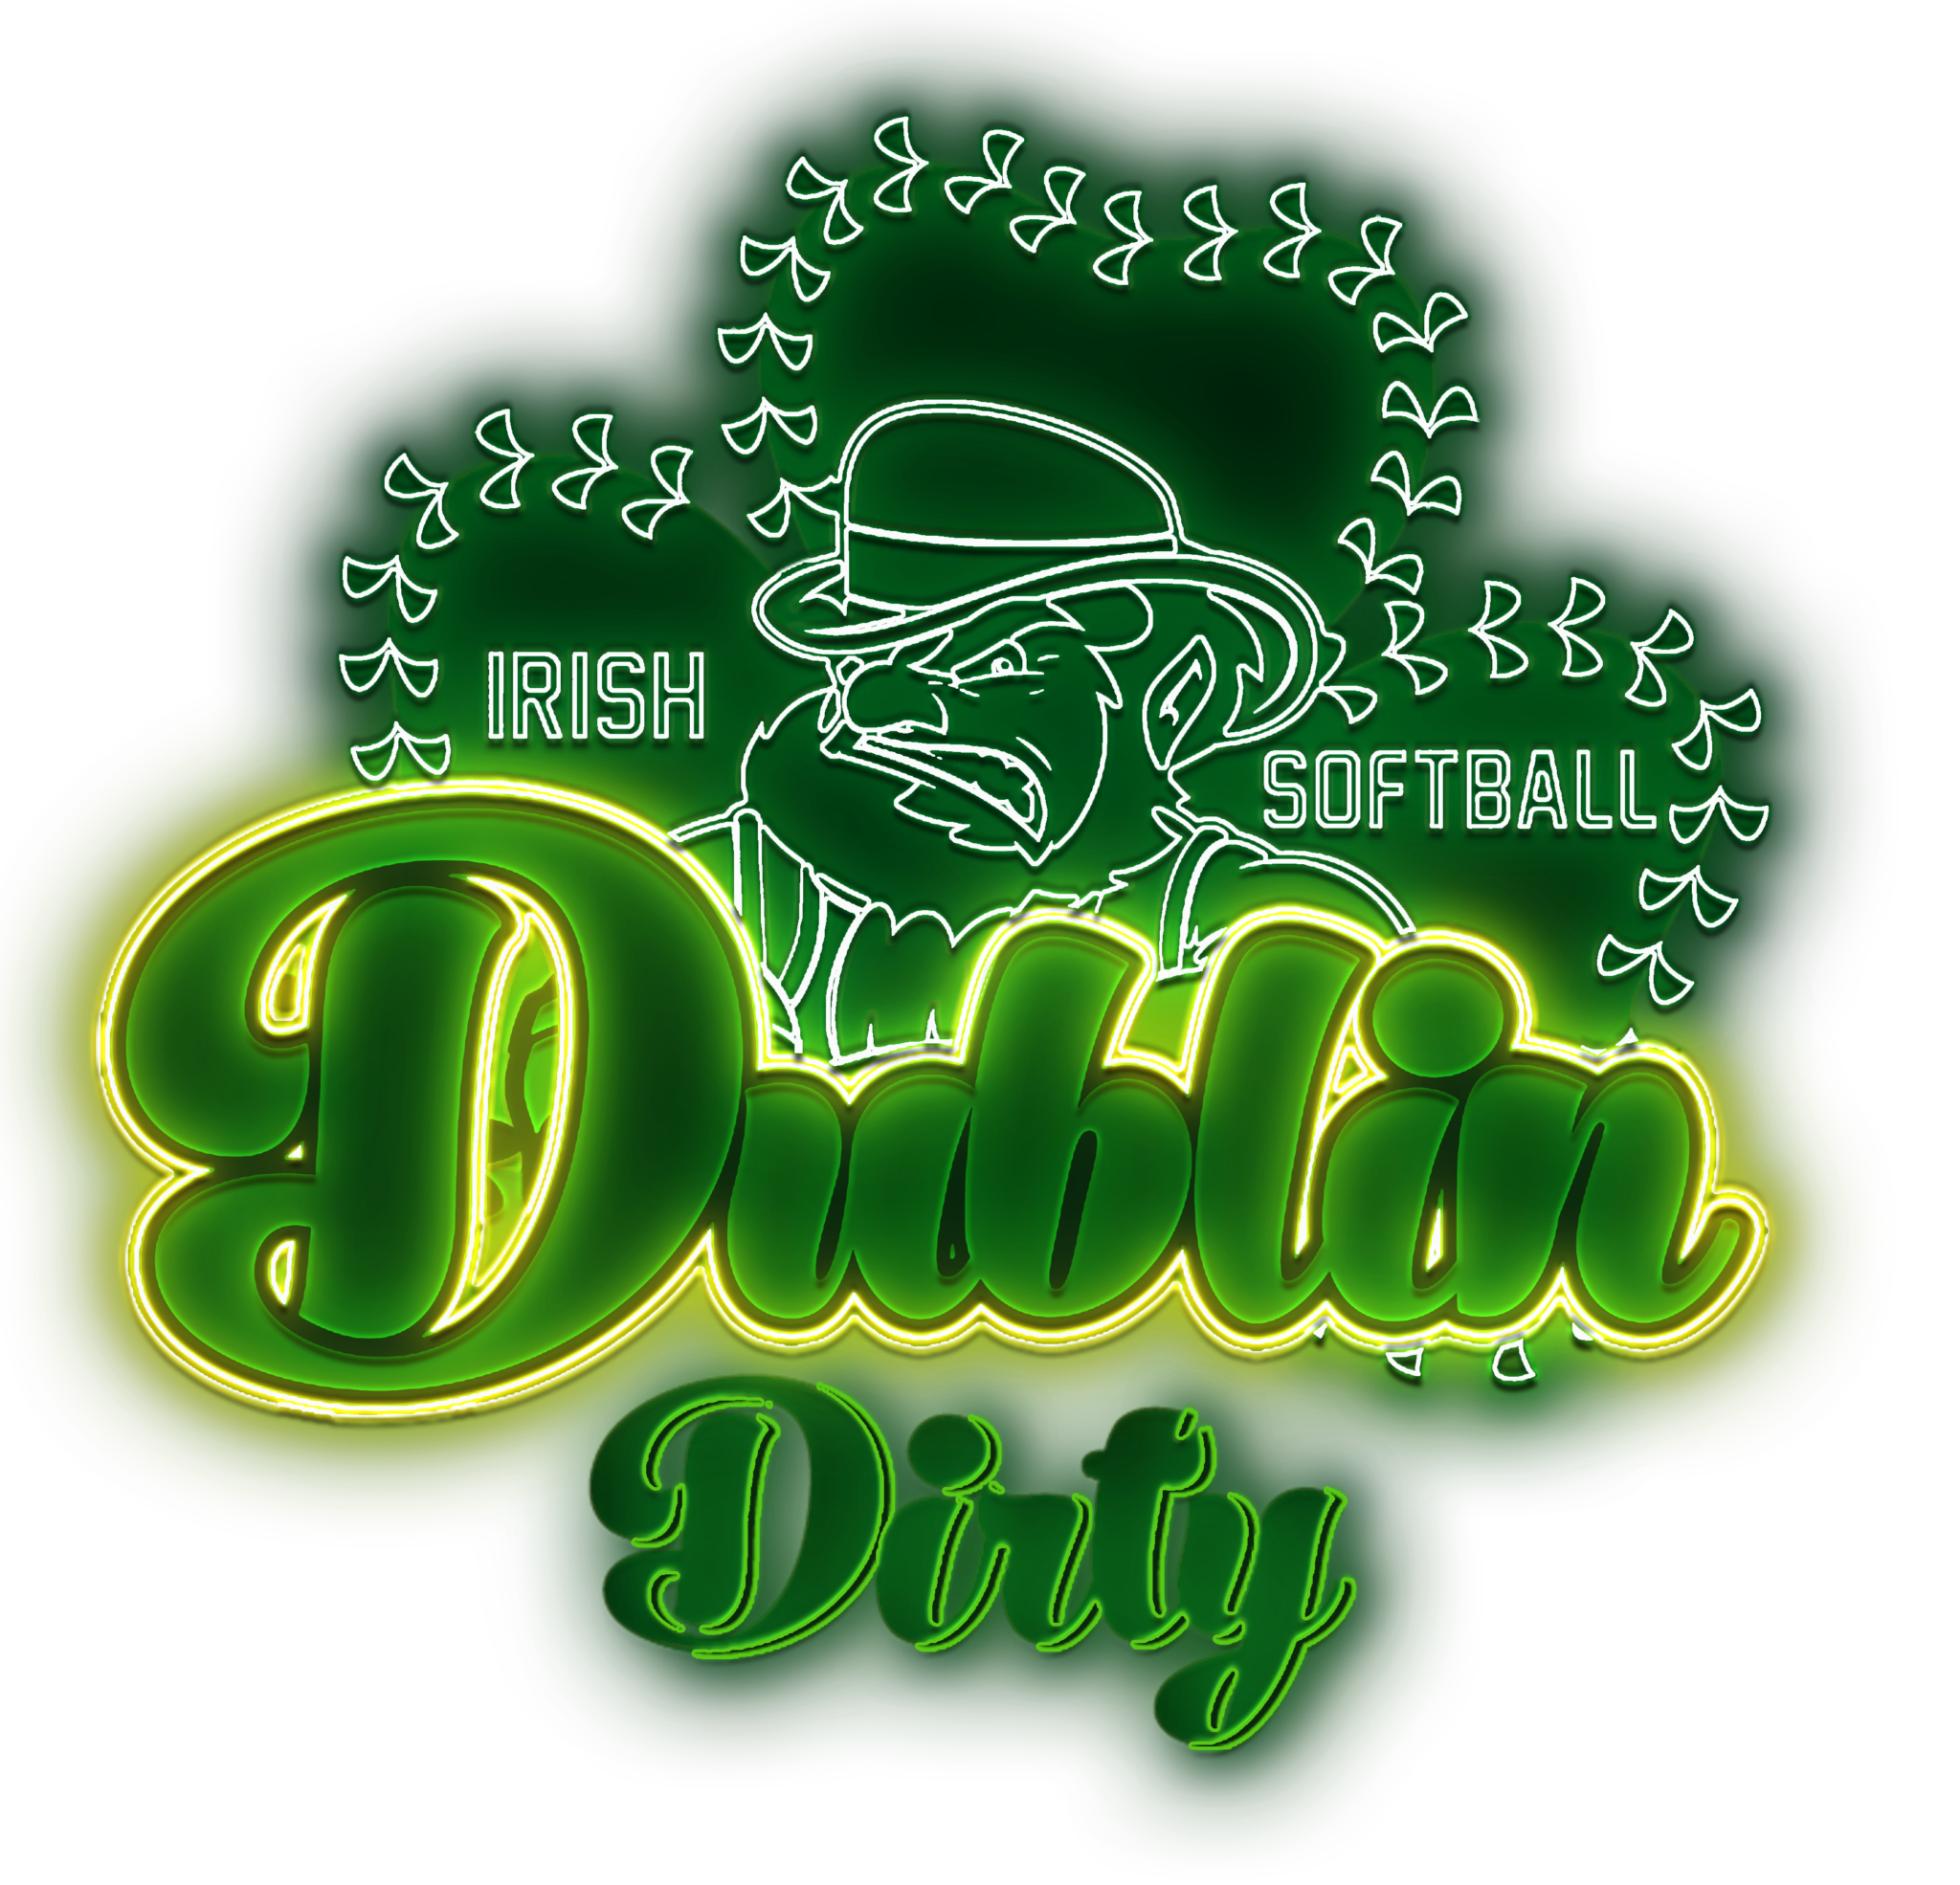 Dublin Dirty